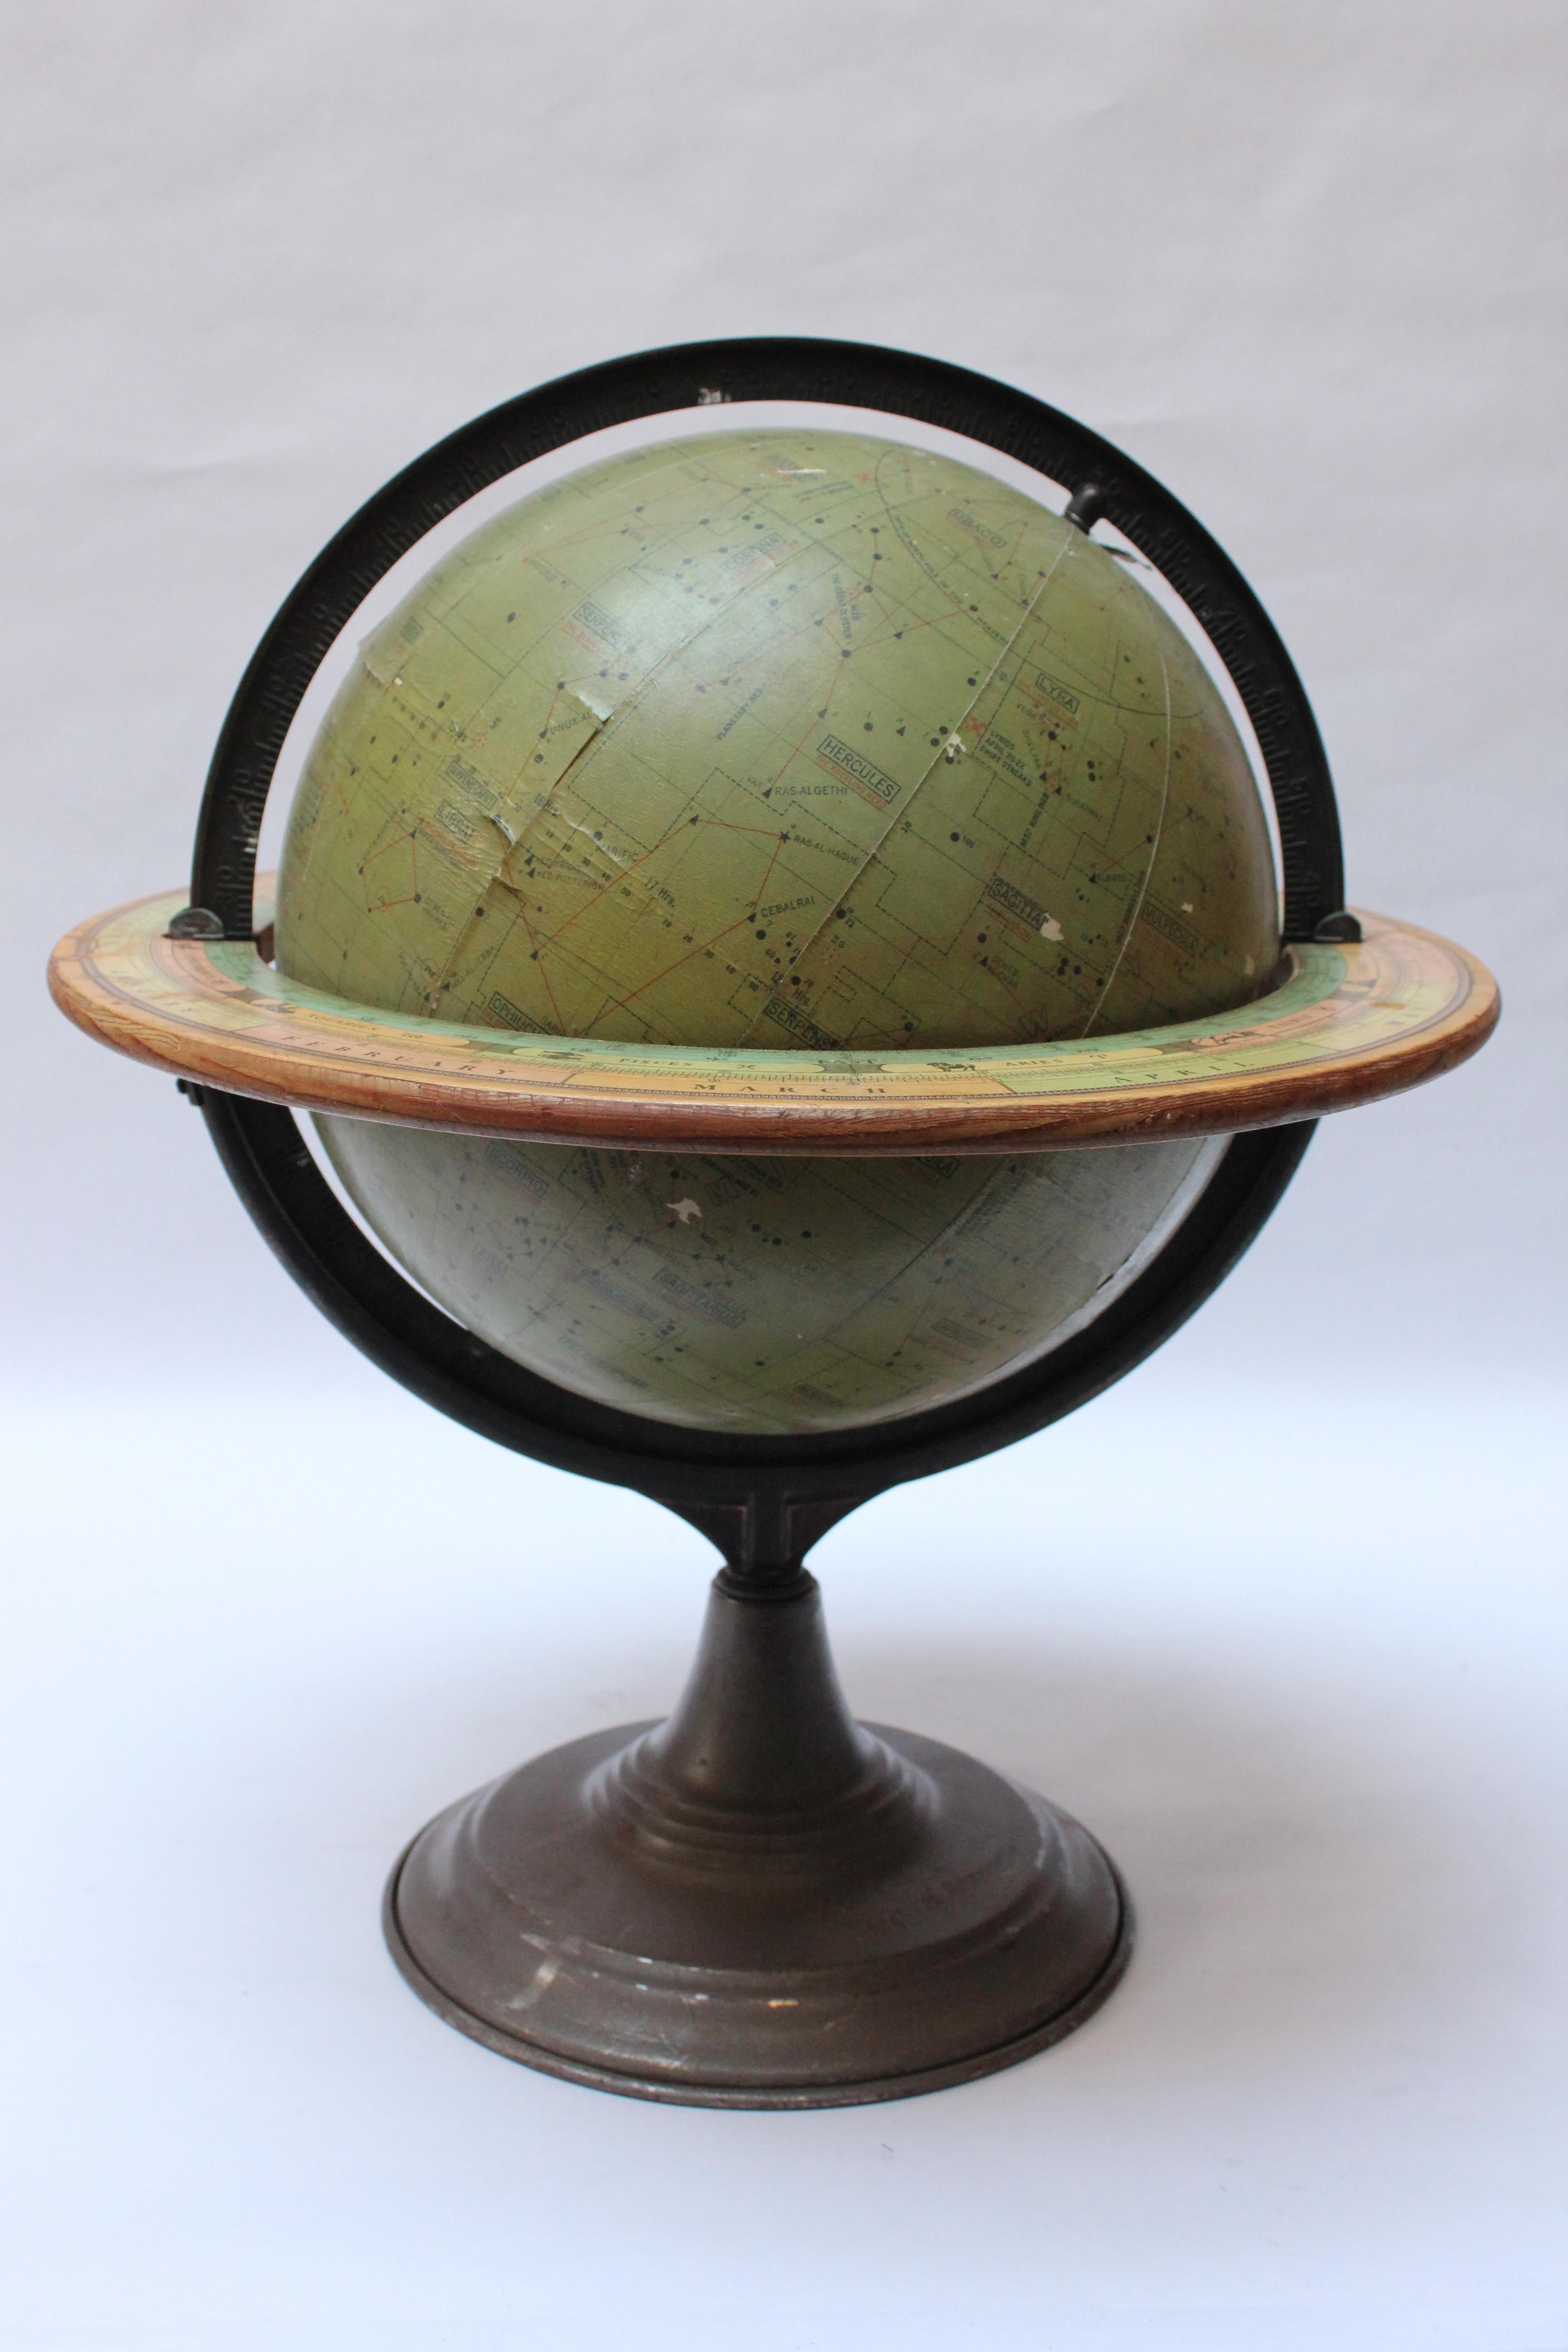 Globe céleste Dennoyer-Geppert conçu par le commandant Stubbs RNR (Royal Navy) à des fins de démonstration d'astronomie en classe (vers 1930, Chicago, IL.). Composé de gores en papier vert olive sur un noyau métallique creux, avec une méridienne